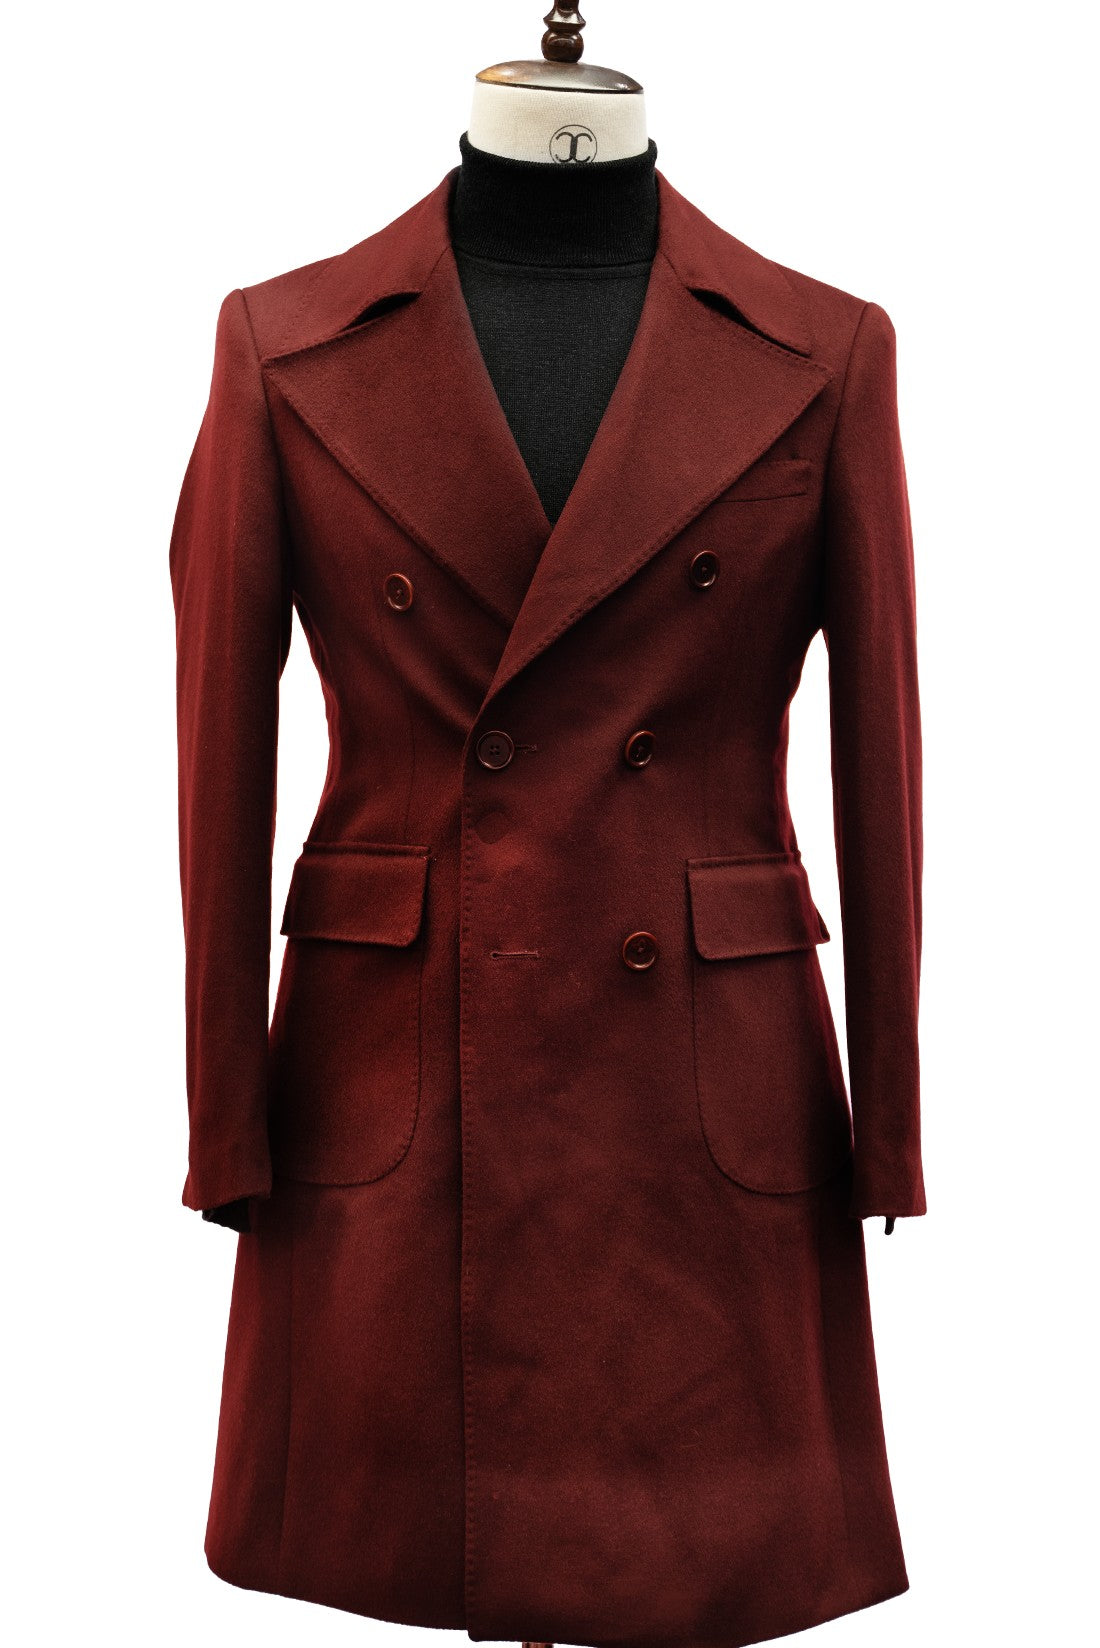 CONNAISSEUR PARIS - Royal Red Cashmere Wool Slim Fit Overcoat